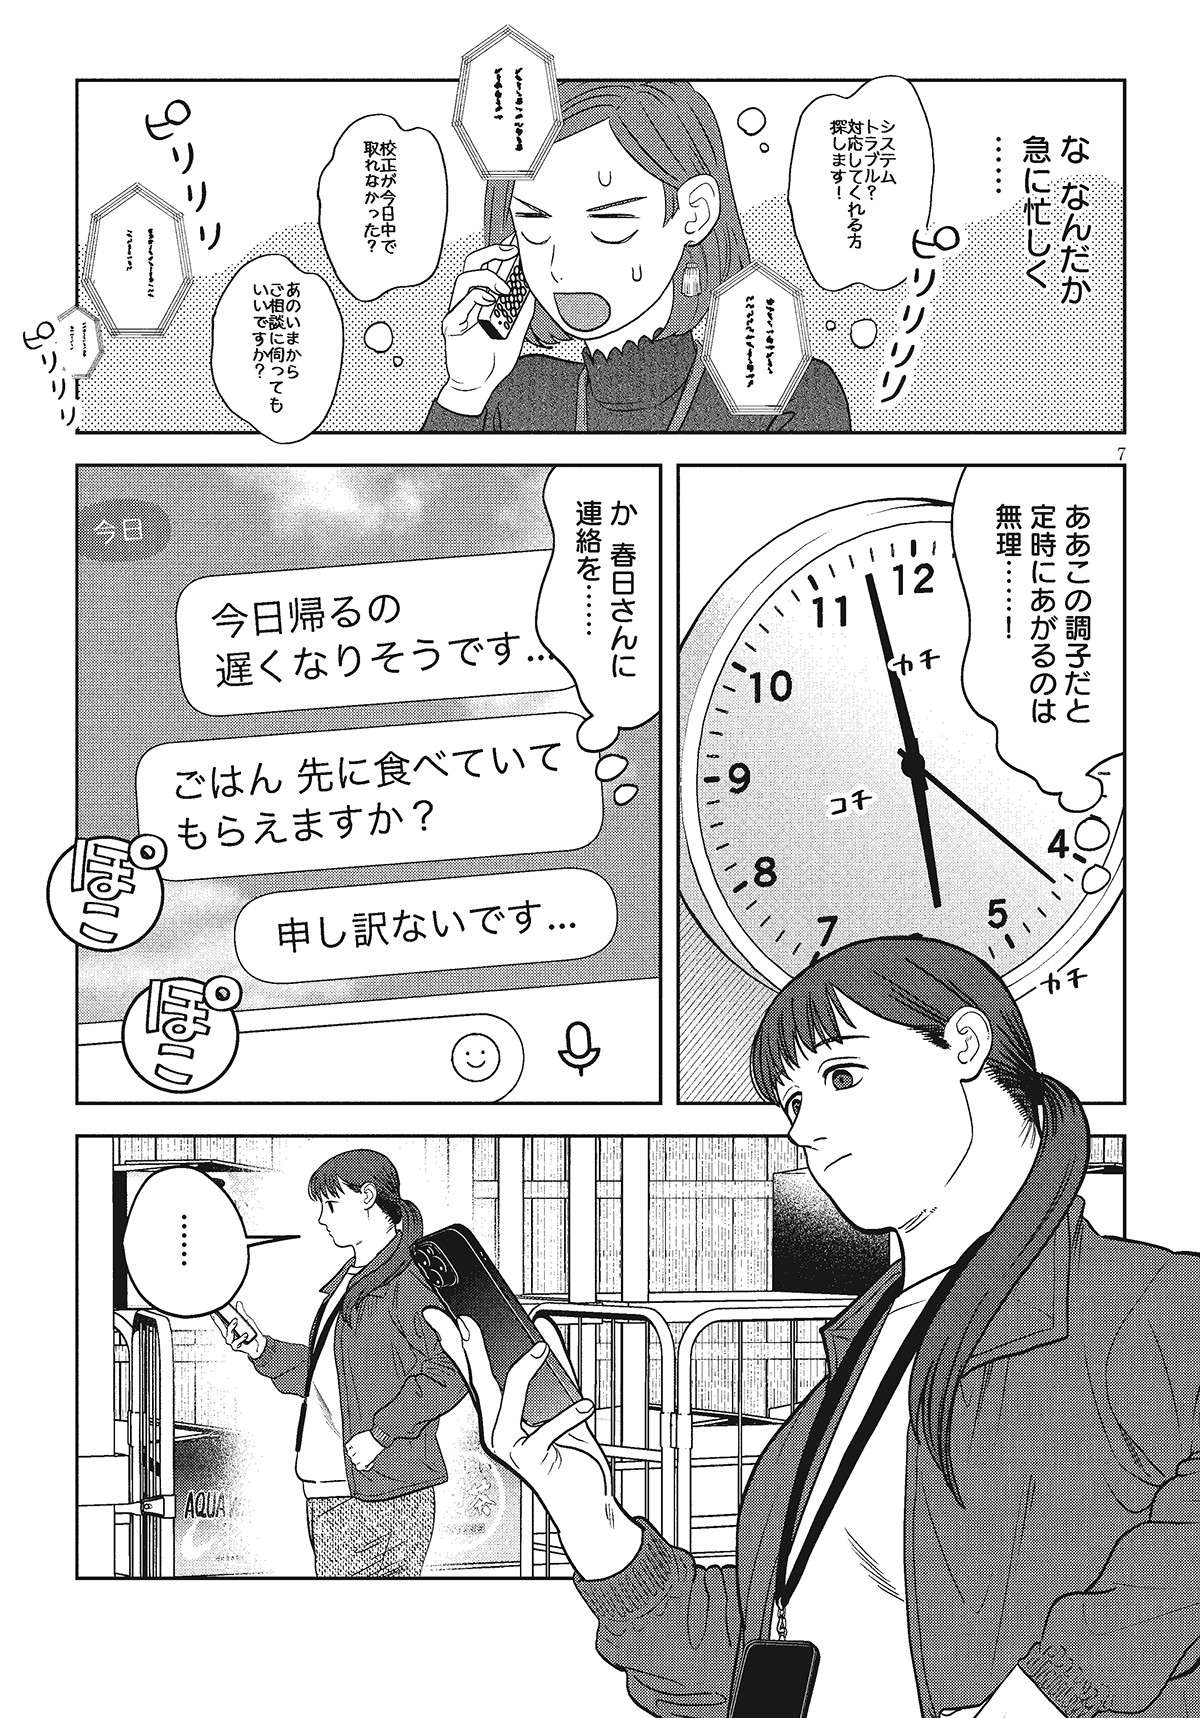 NHKドラマも話題の「つくたべ」。残業の彼女に代わり「食べたい女」が夕飯作り／作りたい女と食べたい女5 tsukutabe43-07.jpg